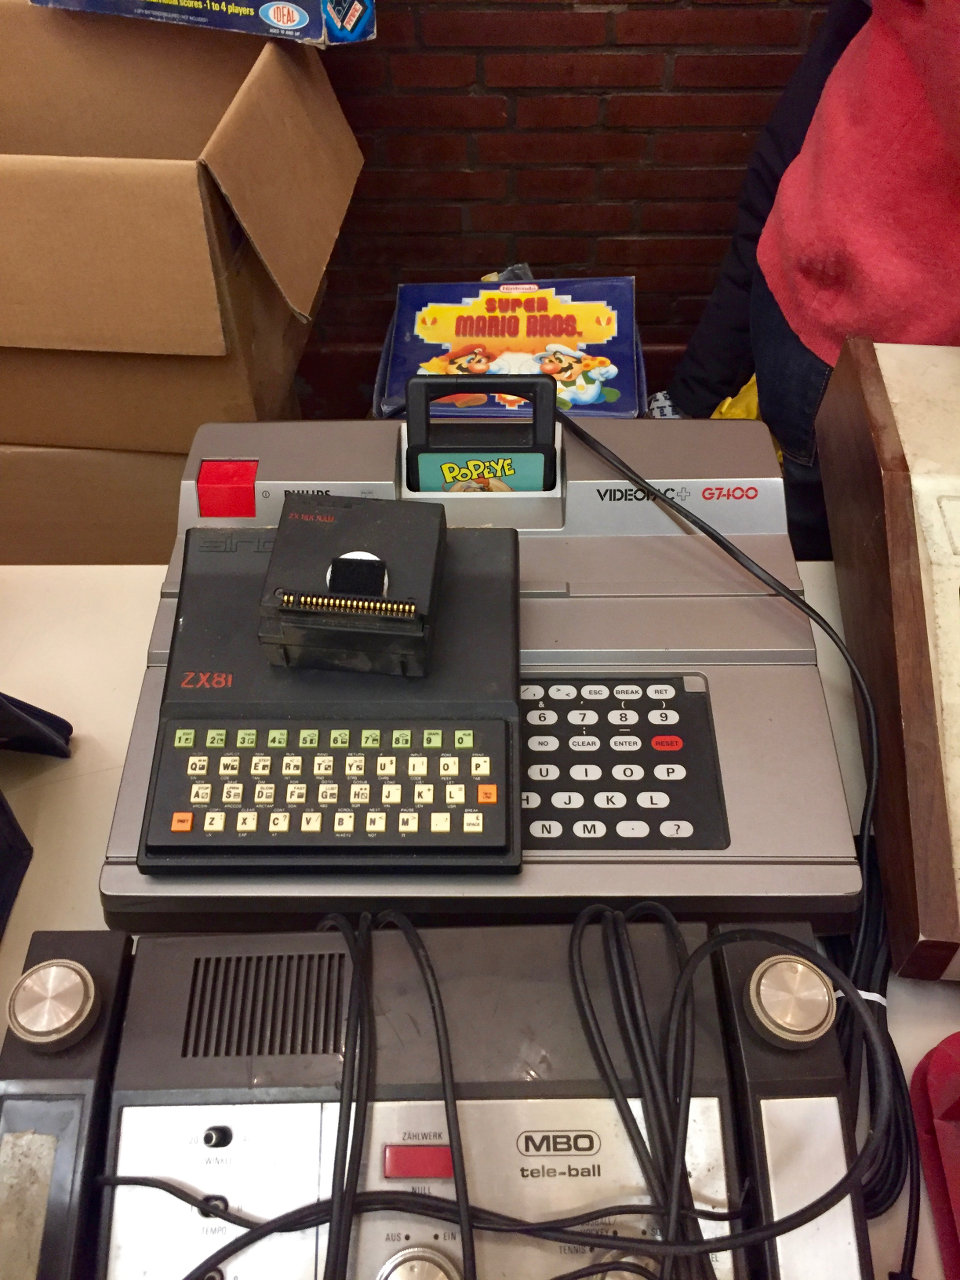 Gruppenbild mit Pong-Konsole, ZX81 und einem Philips Videopac G7400. (Bild: André Eymann)